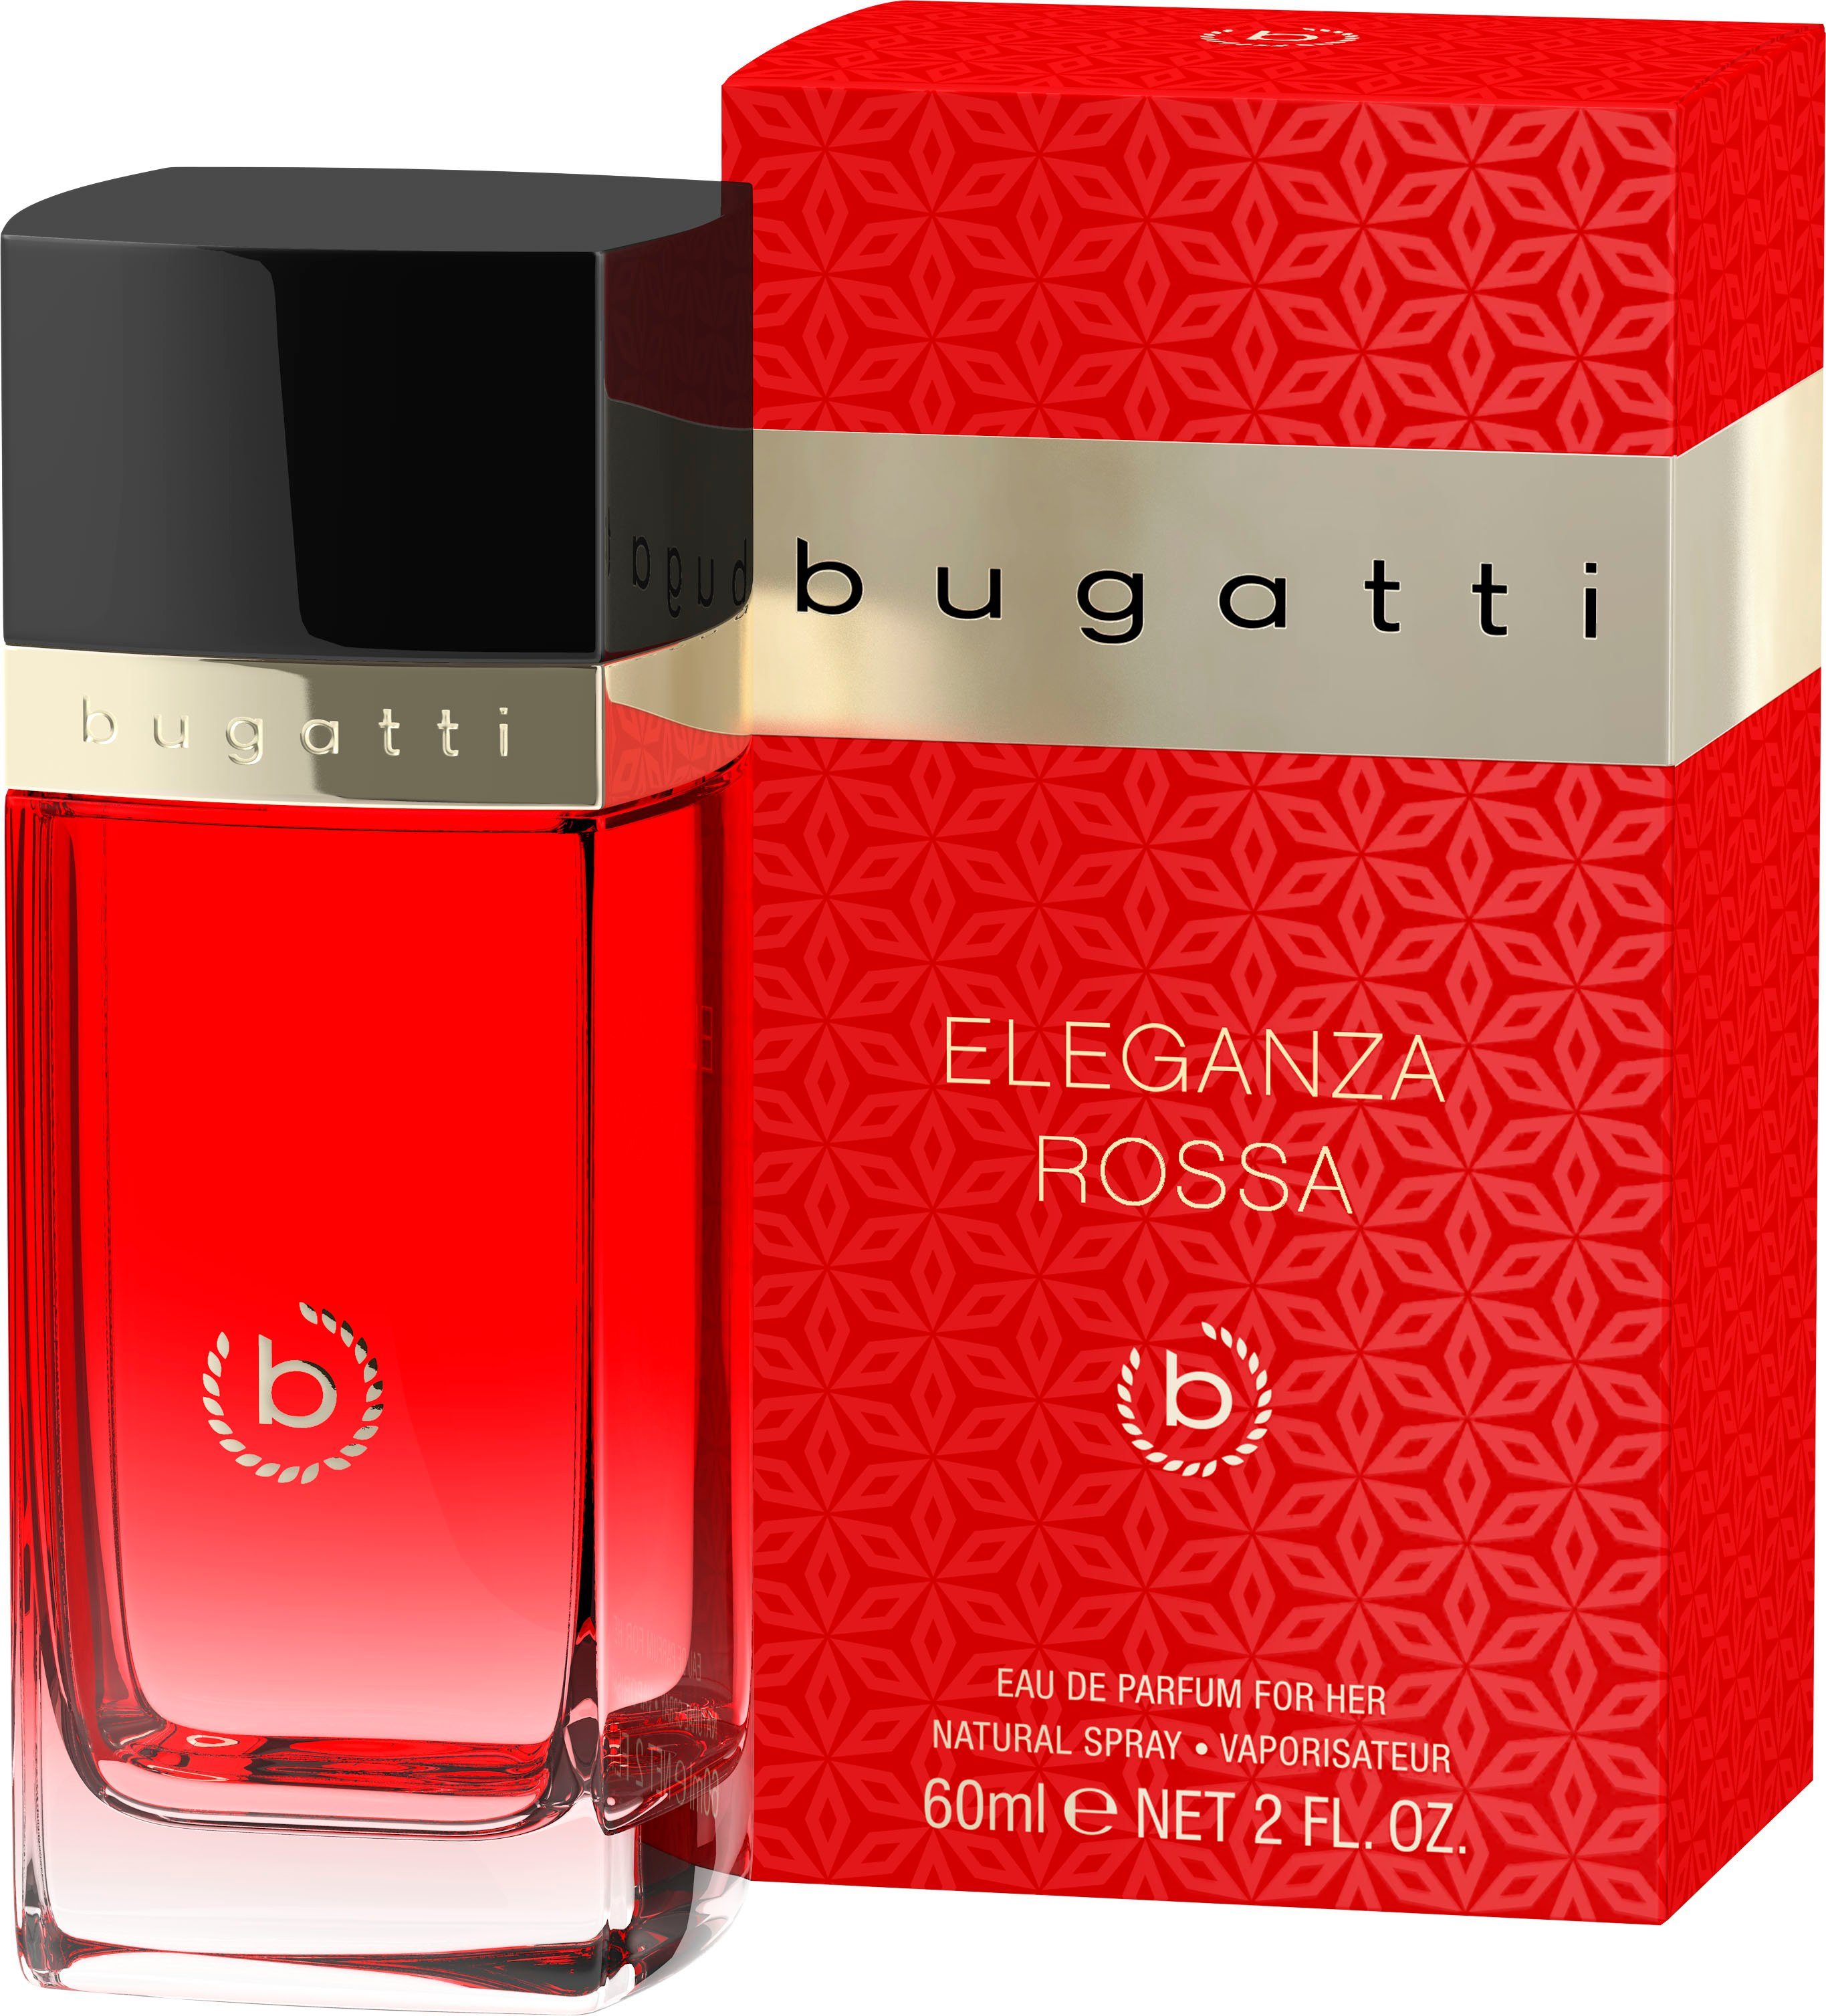 bugatti Eau de Parfum BUGATTI Eleganza Rossa ml her EdP for 60